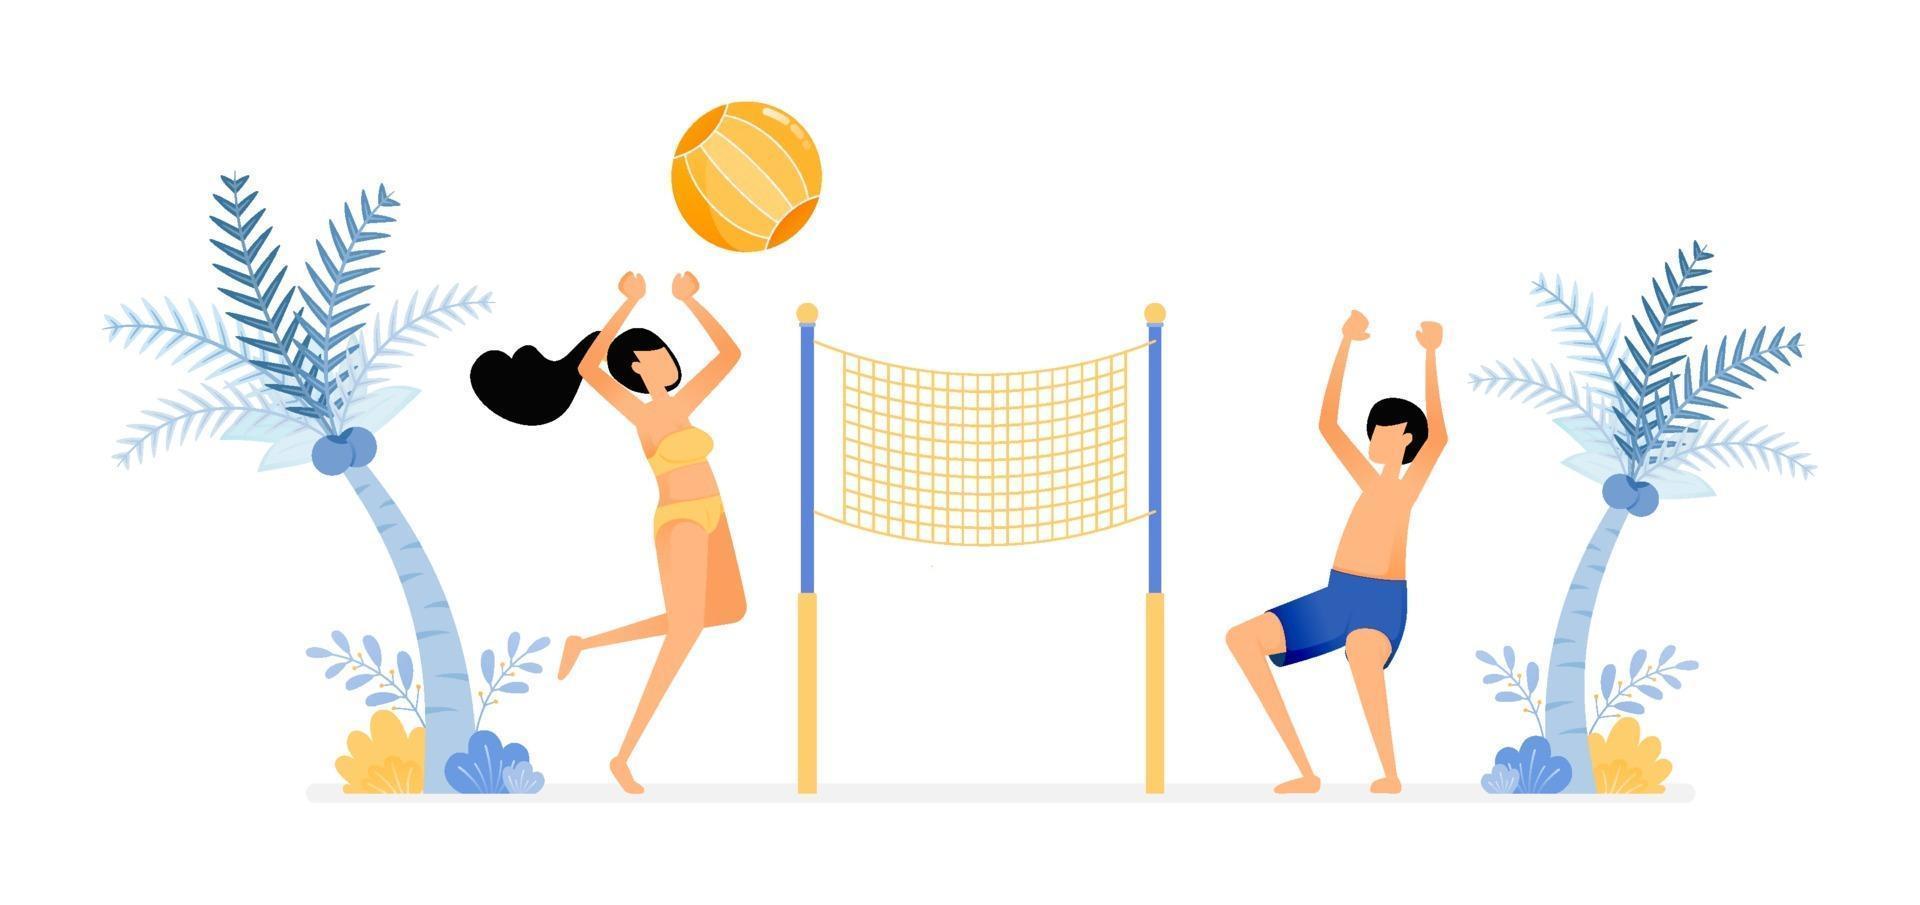 lycklig semesterillustration av par som njuter av en semester på stranden genom att spela volleyboll för att varva ner roliga strandsportvektordesign kan användas för affischbannerannonswebbplats mobil mobil marknadsföring vektor